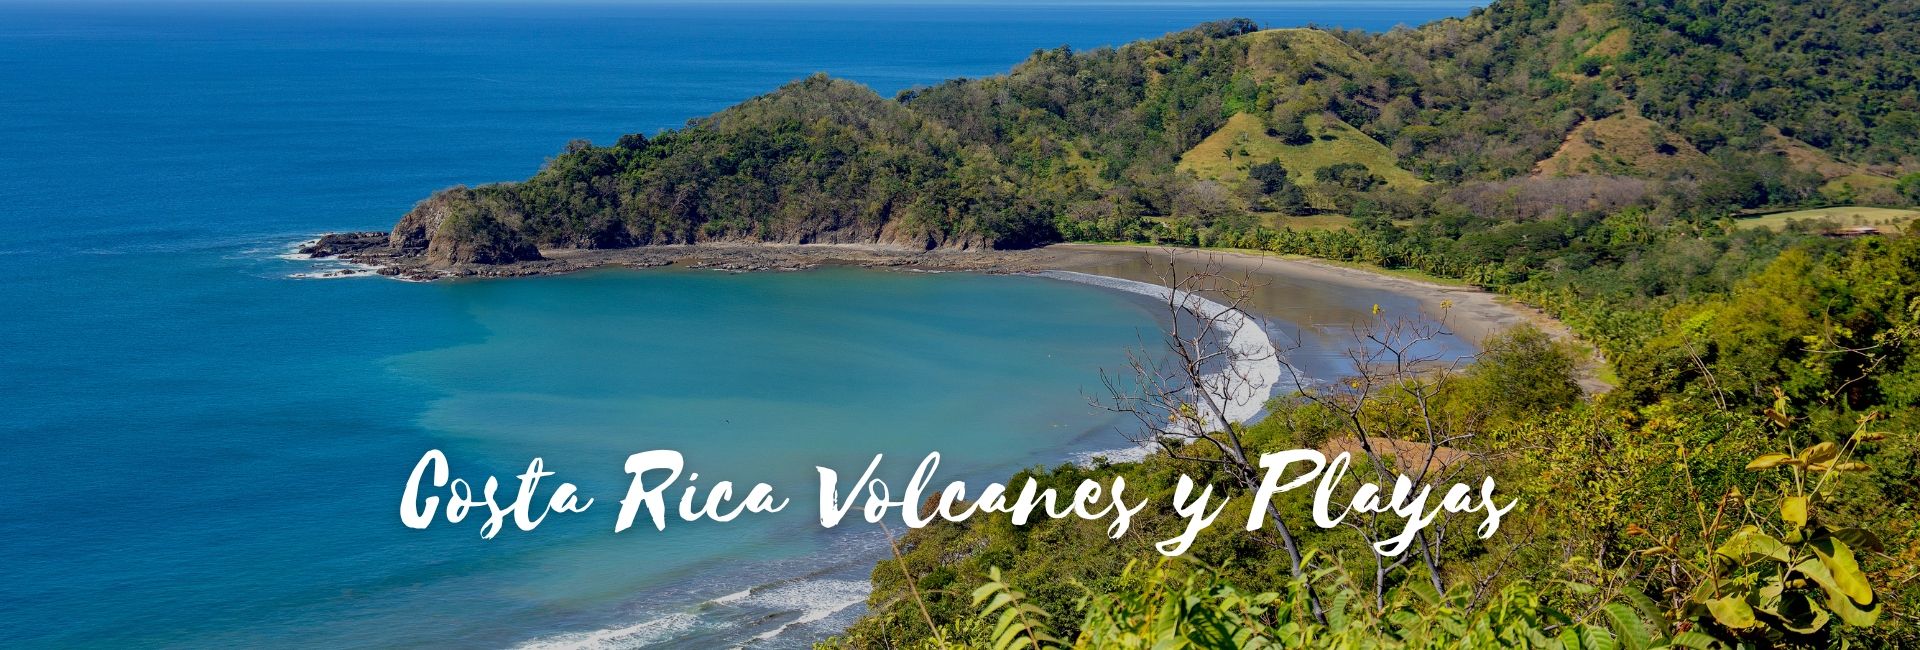 Viaje a AT-50106 Costa Rica Volcanes y Playas